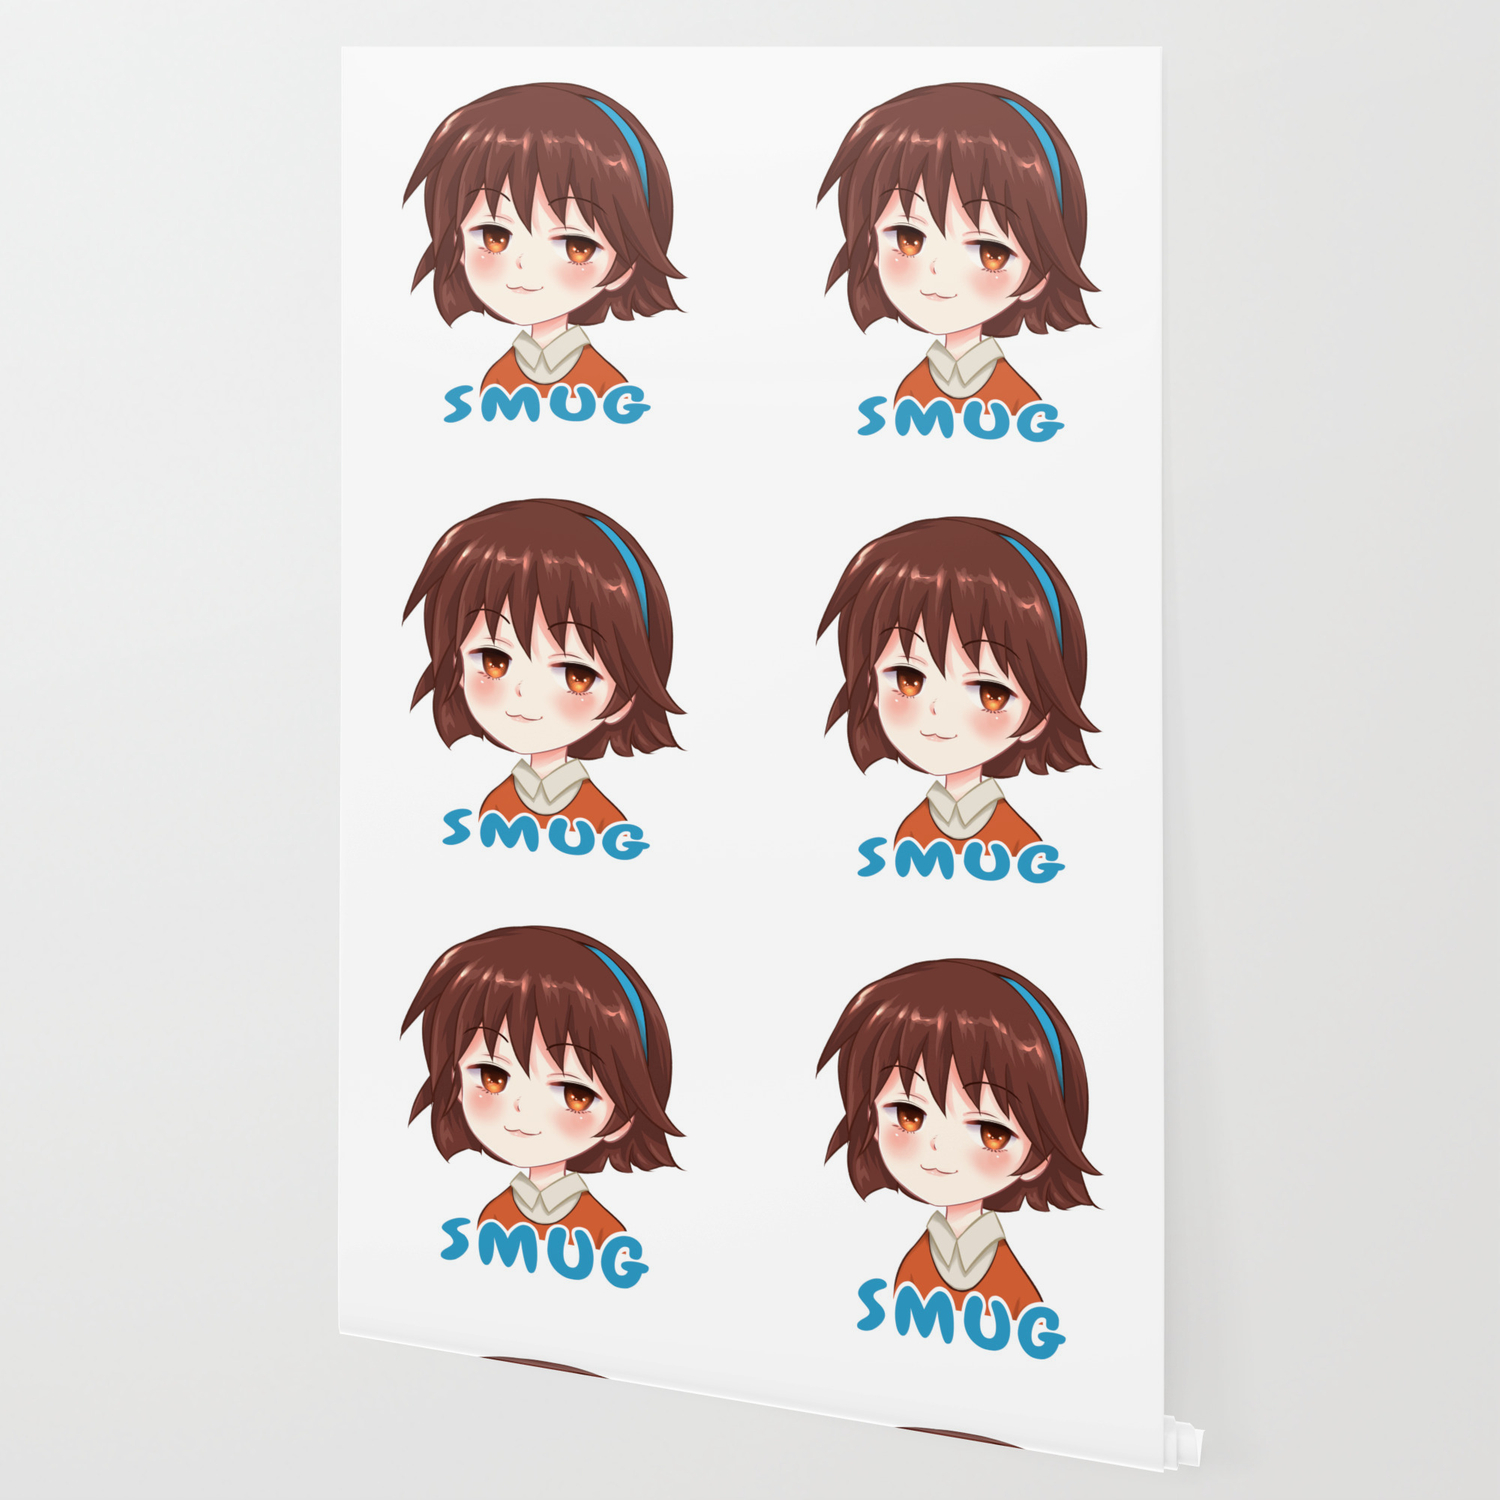 Anime Smug Faces Wallpapers